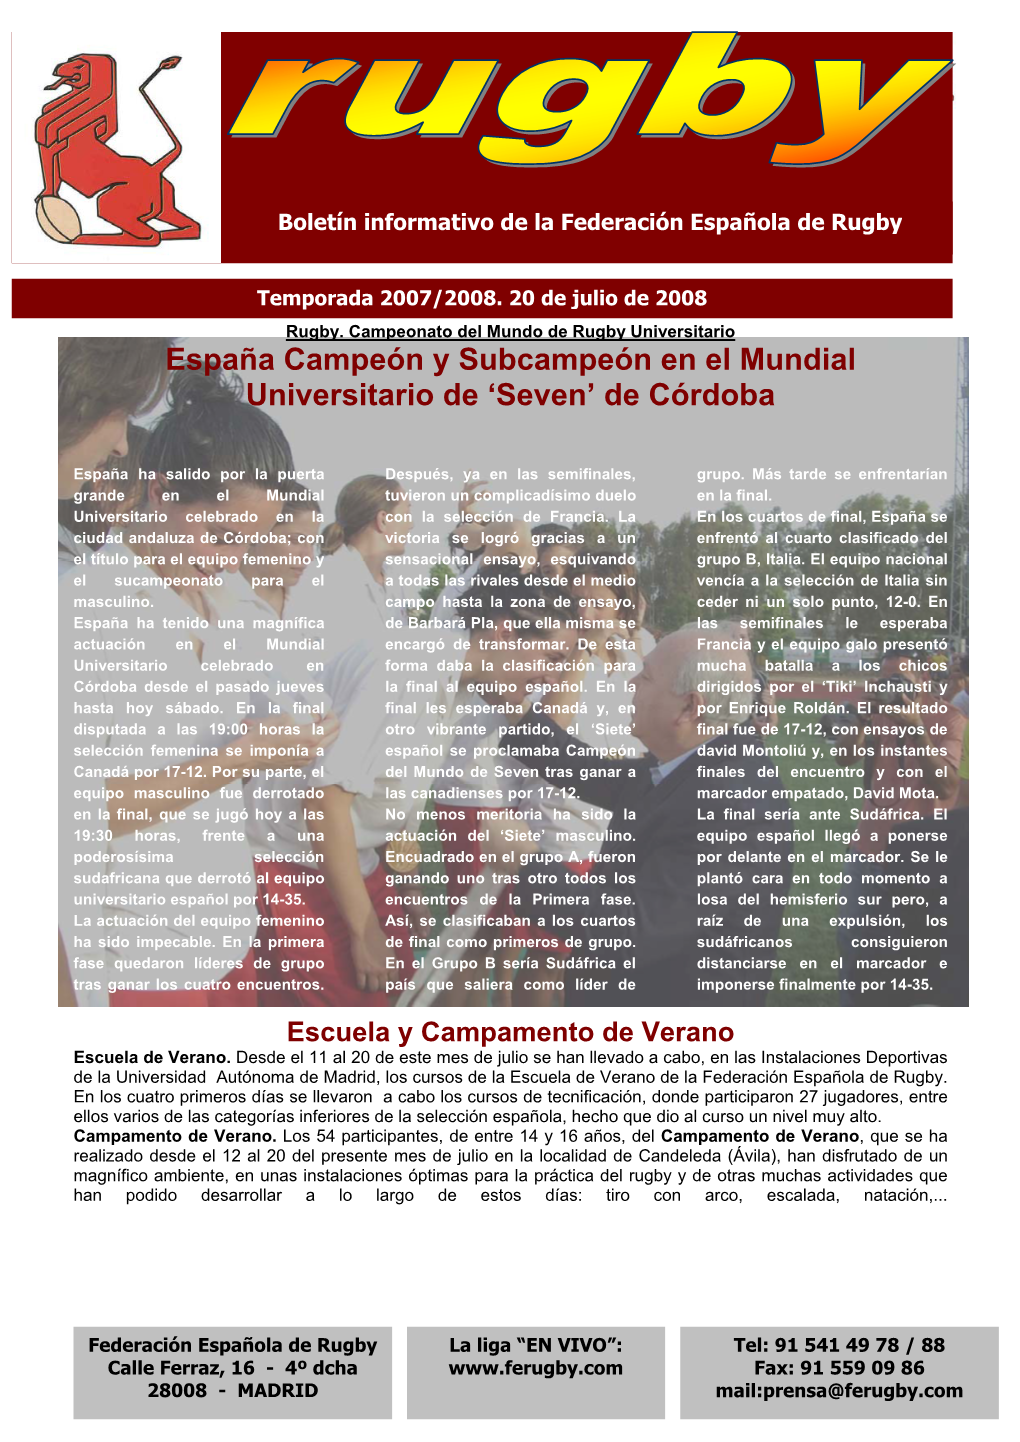 España Campeón Y Subcampeón En El Mundial Universitario De ‘Seven’ De Córdoba